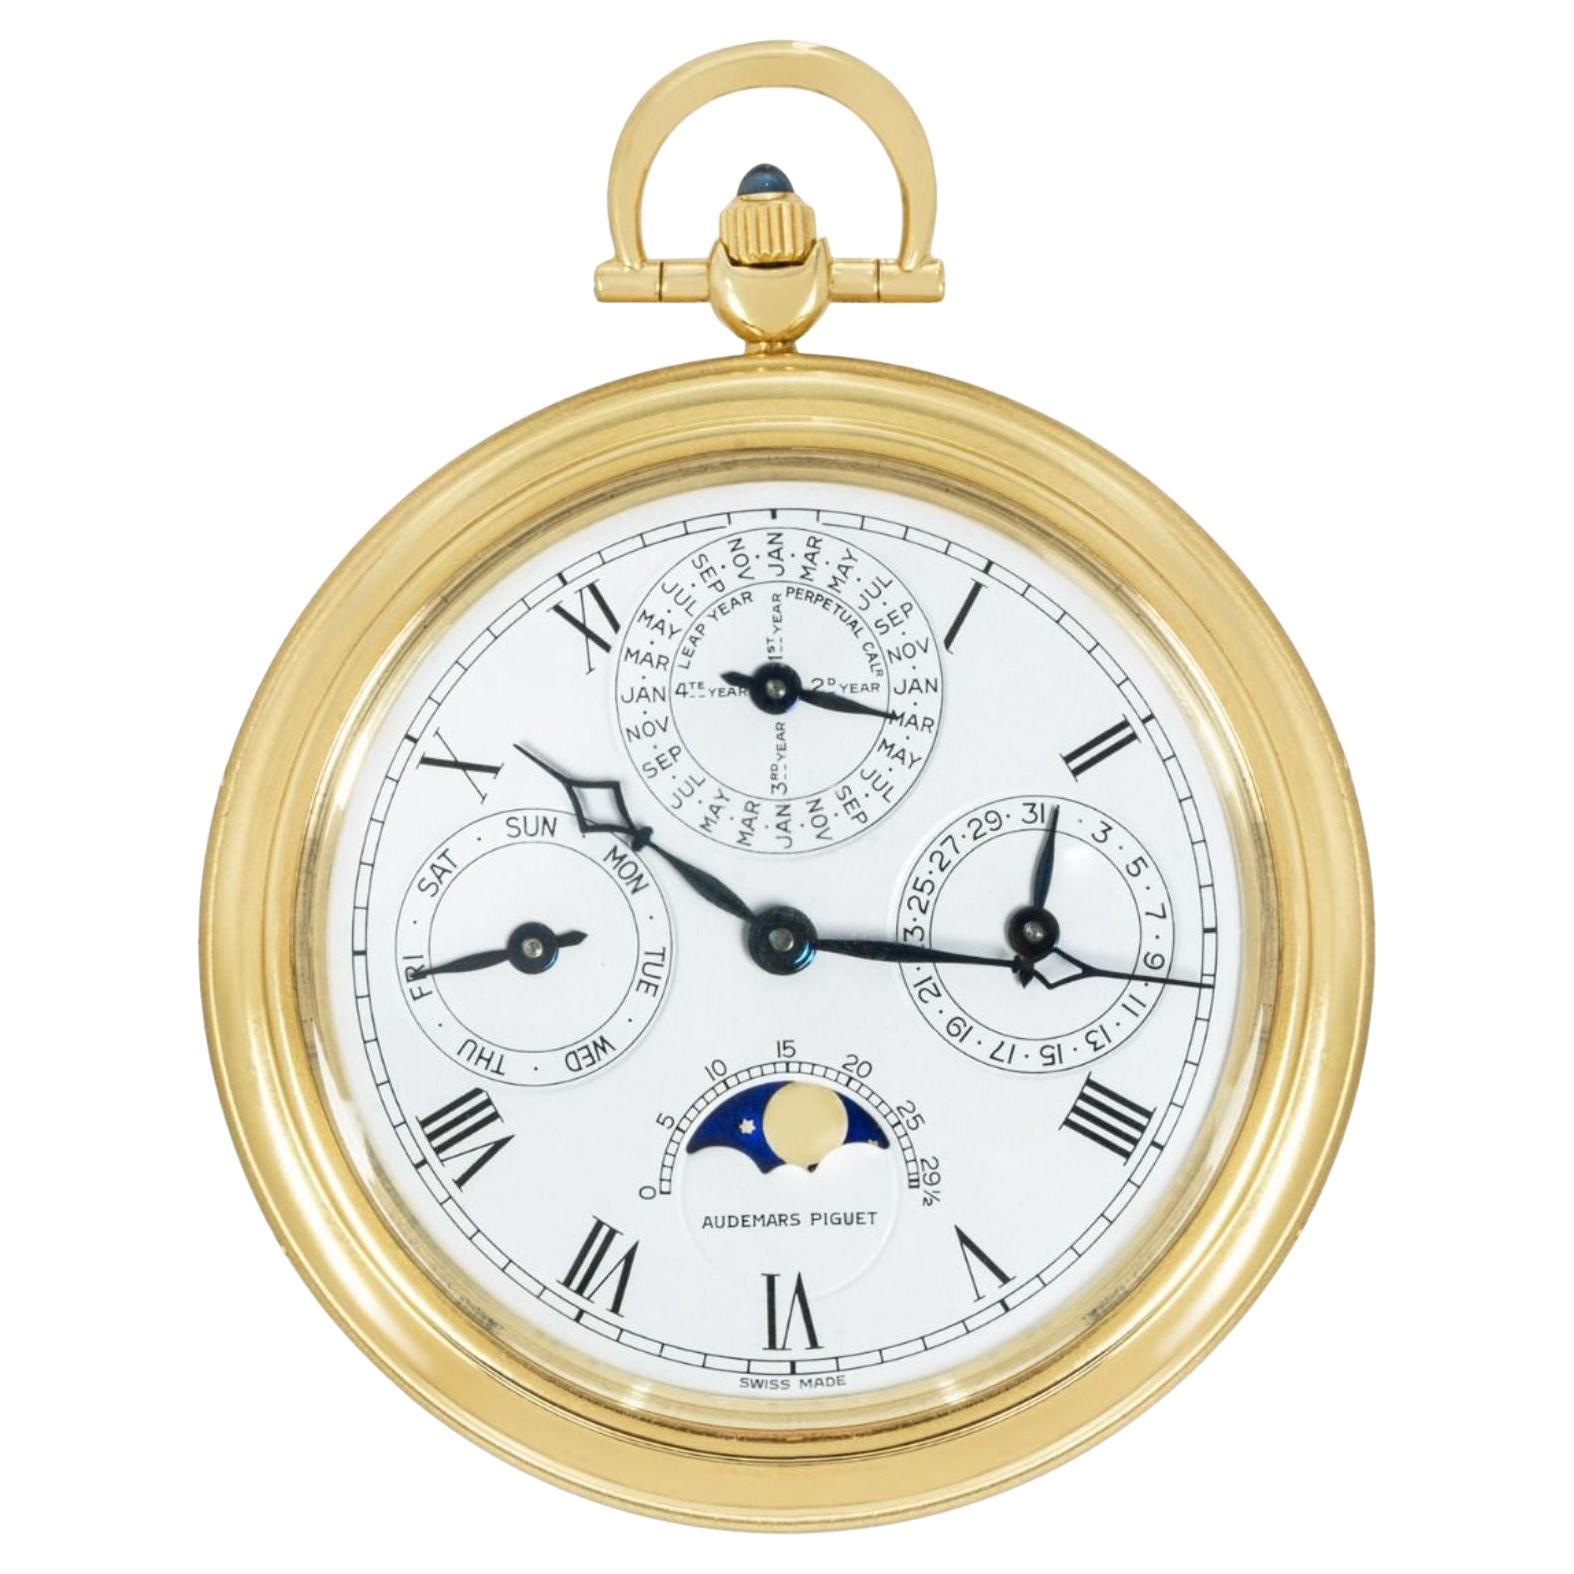 Audemar Piguet Yellow Gold Perpetual Calendar Pocket Watch C1970 For Sale